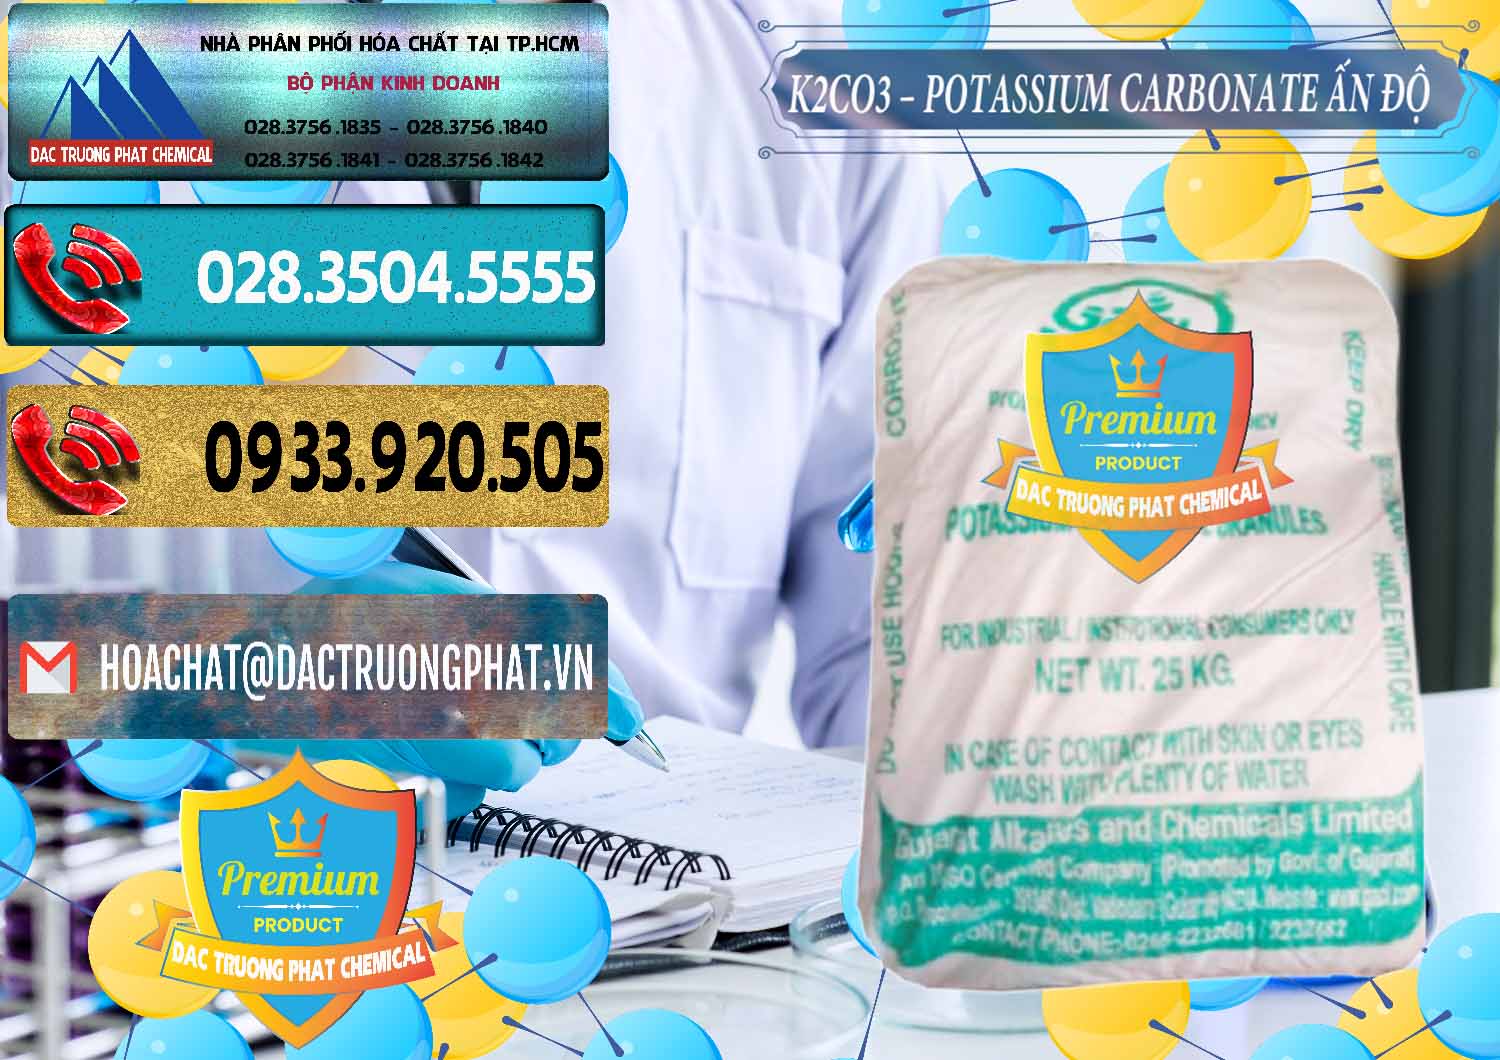 Cung ứng và bán K2Co3 – Potassium Carbonate GACL Ấn Độ India - 0472 - Đơn vị chuyên kinh doanh - cung cấp hóa chất tại TP.HCM - hoachatdetnhuom.com